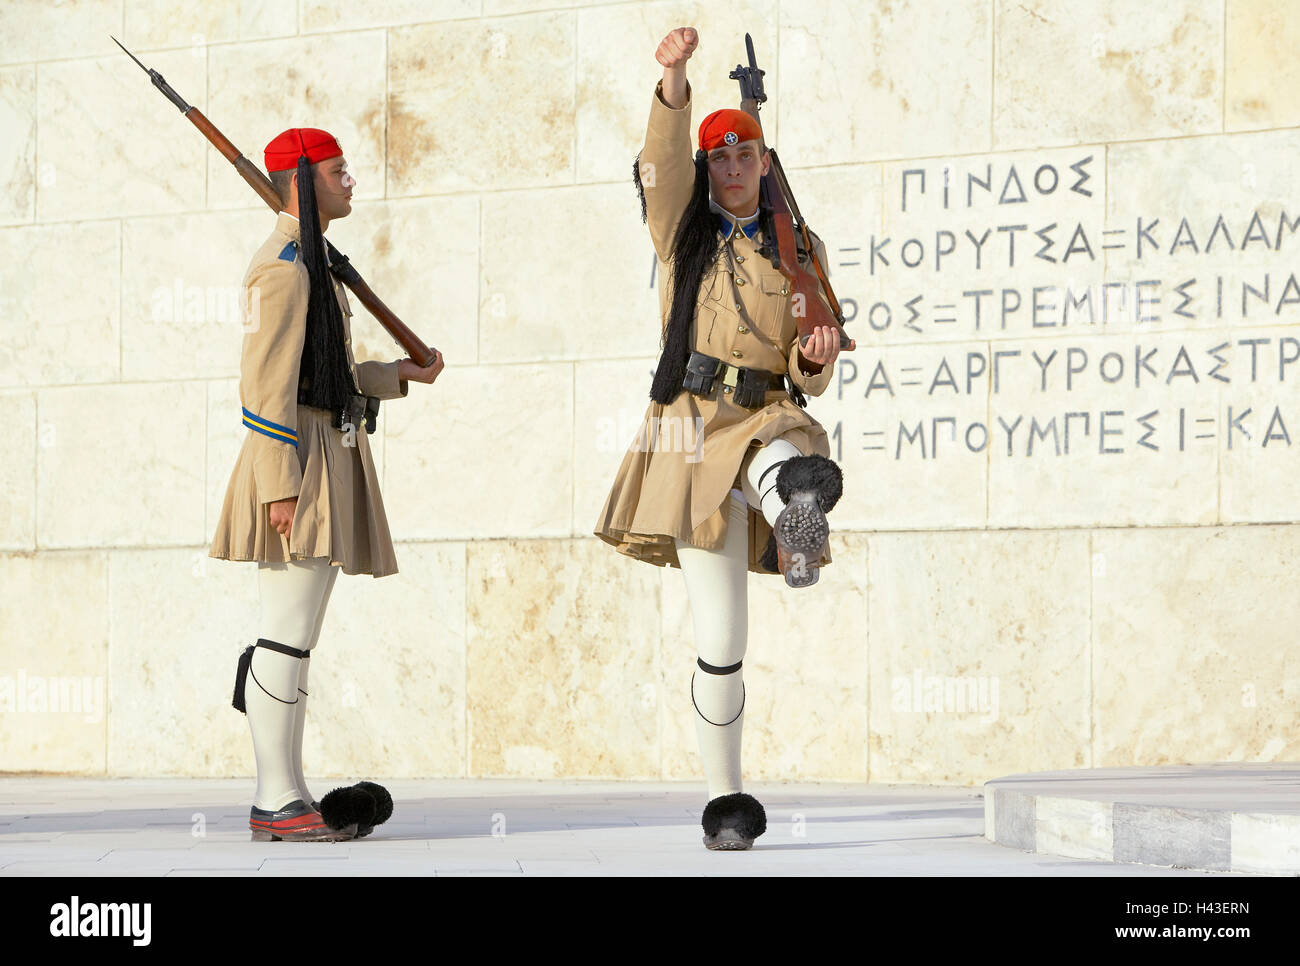 Les soldats de l'evzone changement de garde, Athènes, Grèce Banque D'Images